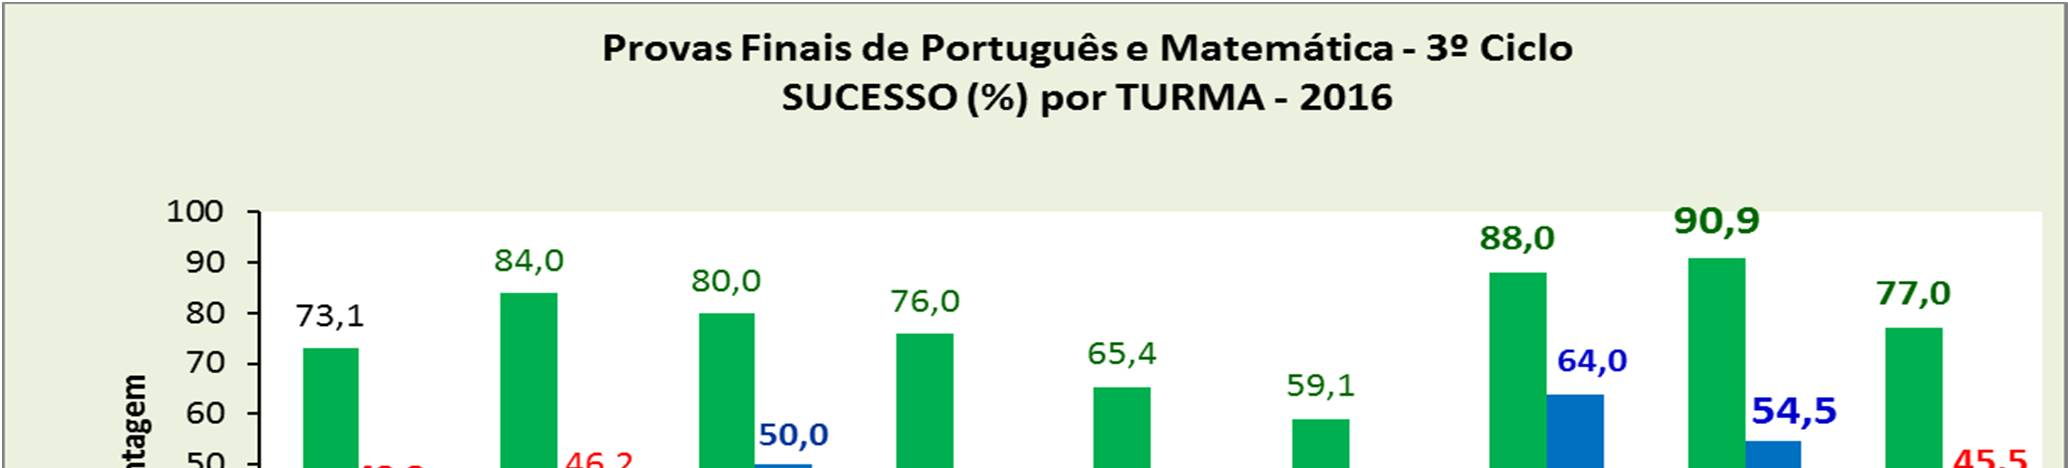 Provas Finais no 9º ano Tabela 23 - Provas Finais de Português e Matemática.